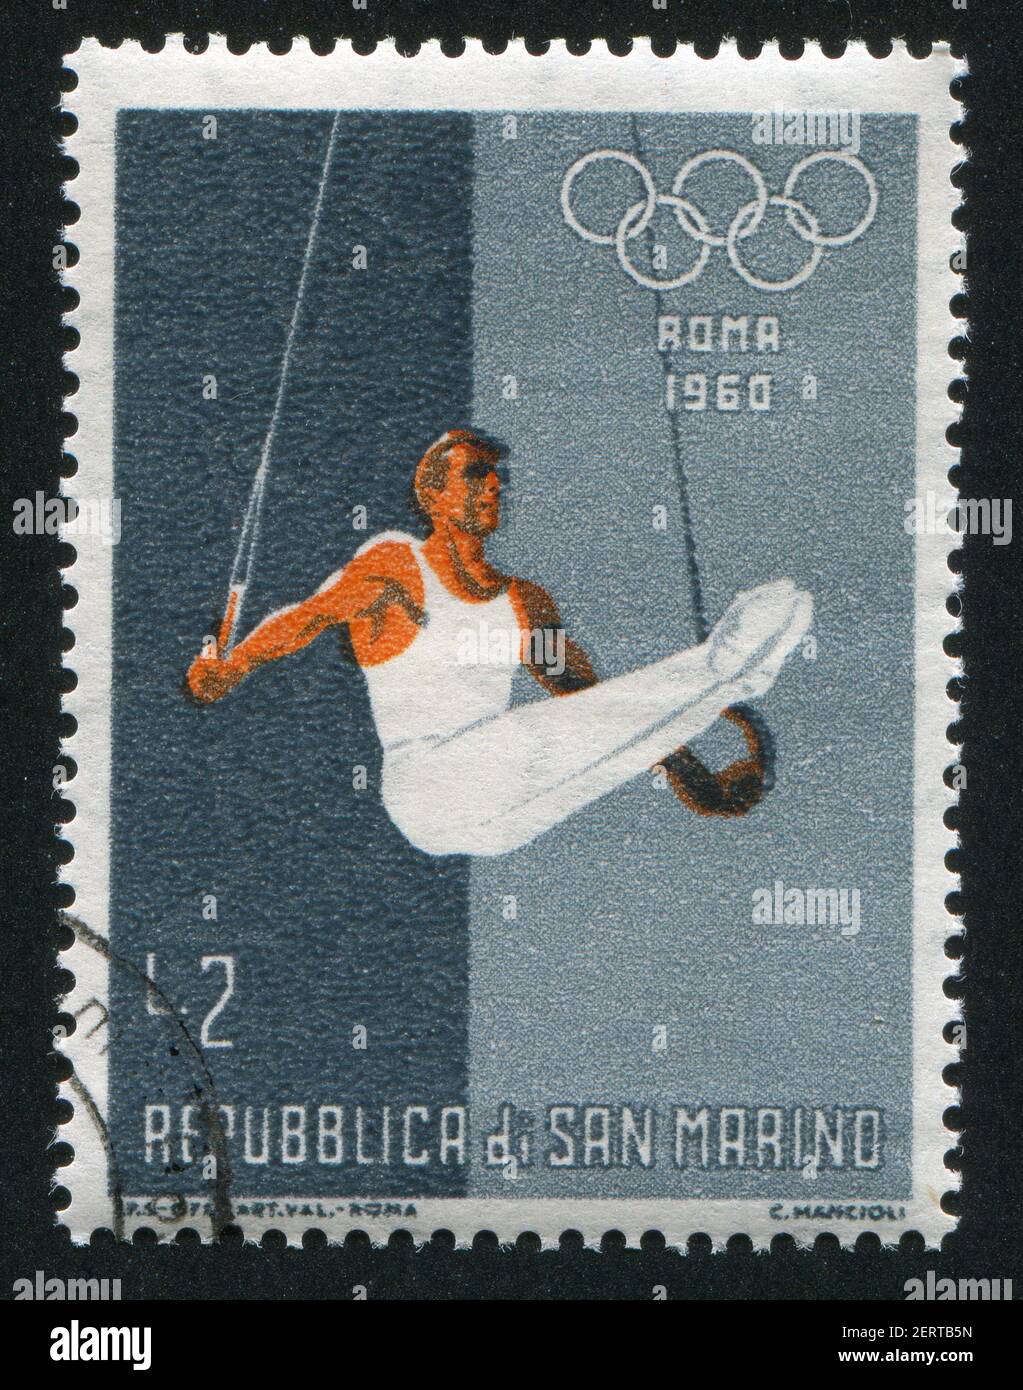 SAINT-MARIN - VERS 1960: Timbre imprimé par Saint-Marin, montre la gymnastique, vers 1960 Banque D'Images